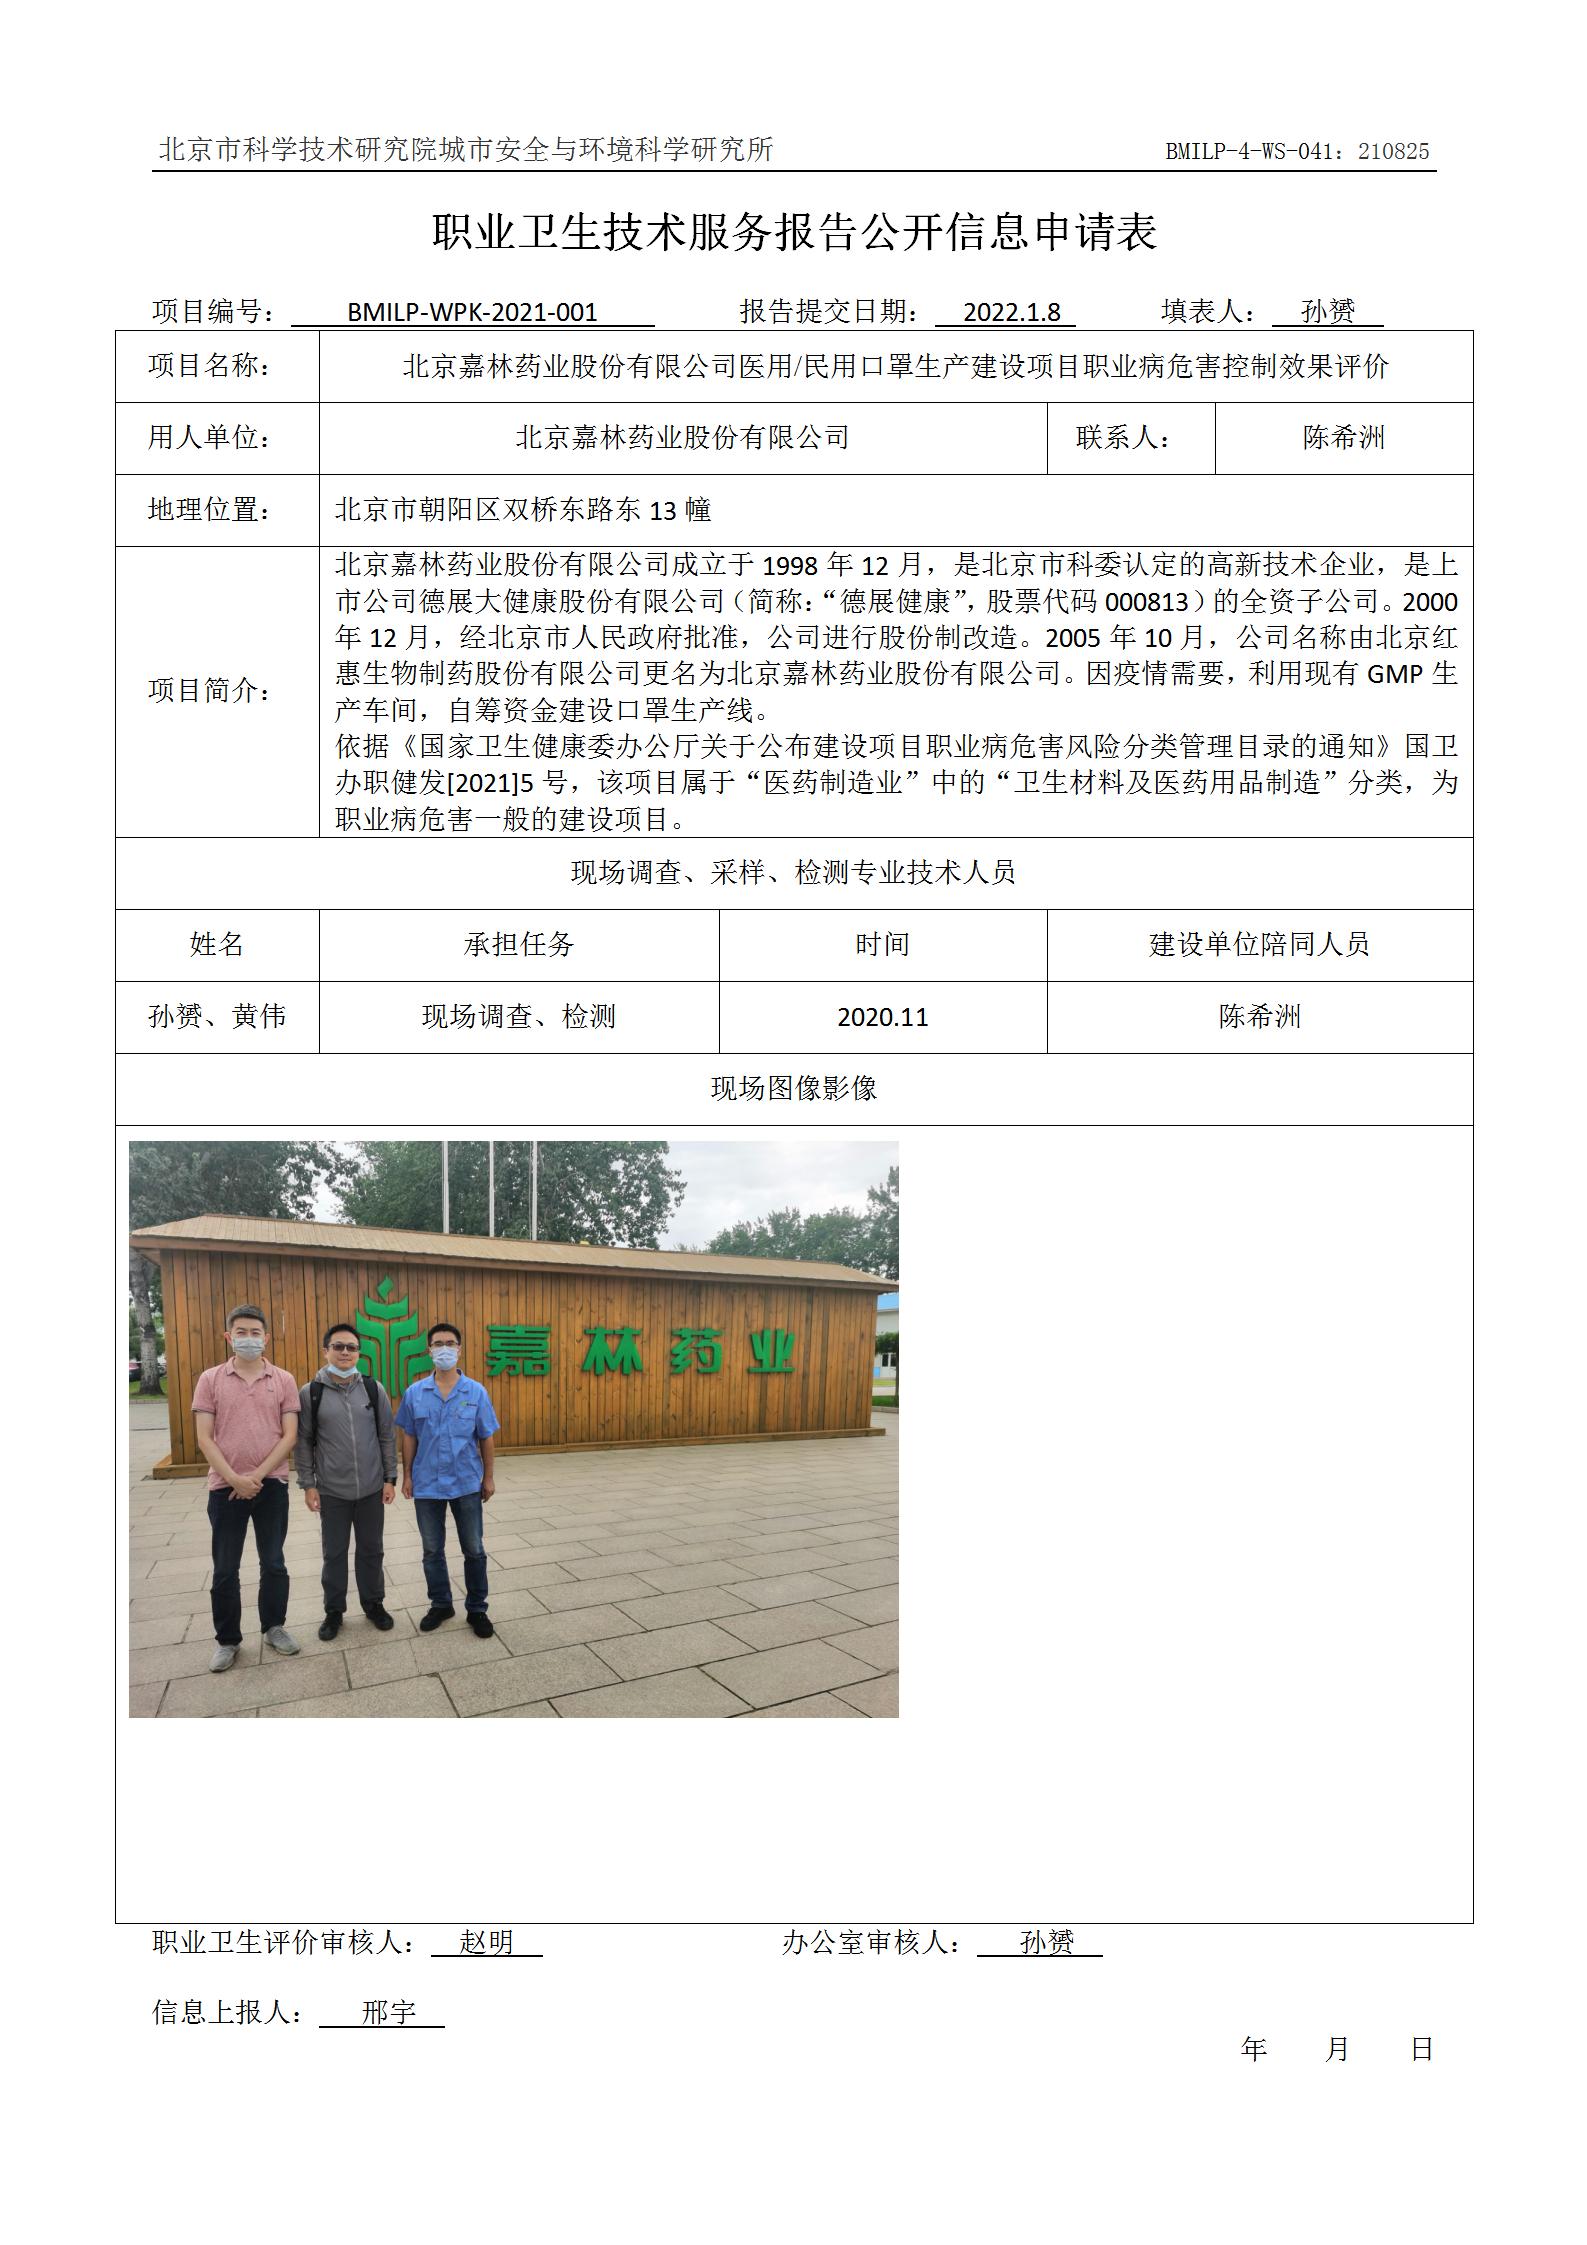 北京嘉林药业股份有限公司医用民用口罩生产建设项目职业病危害控制效果评价